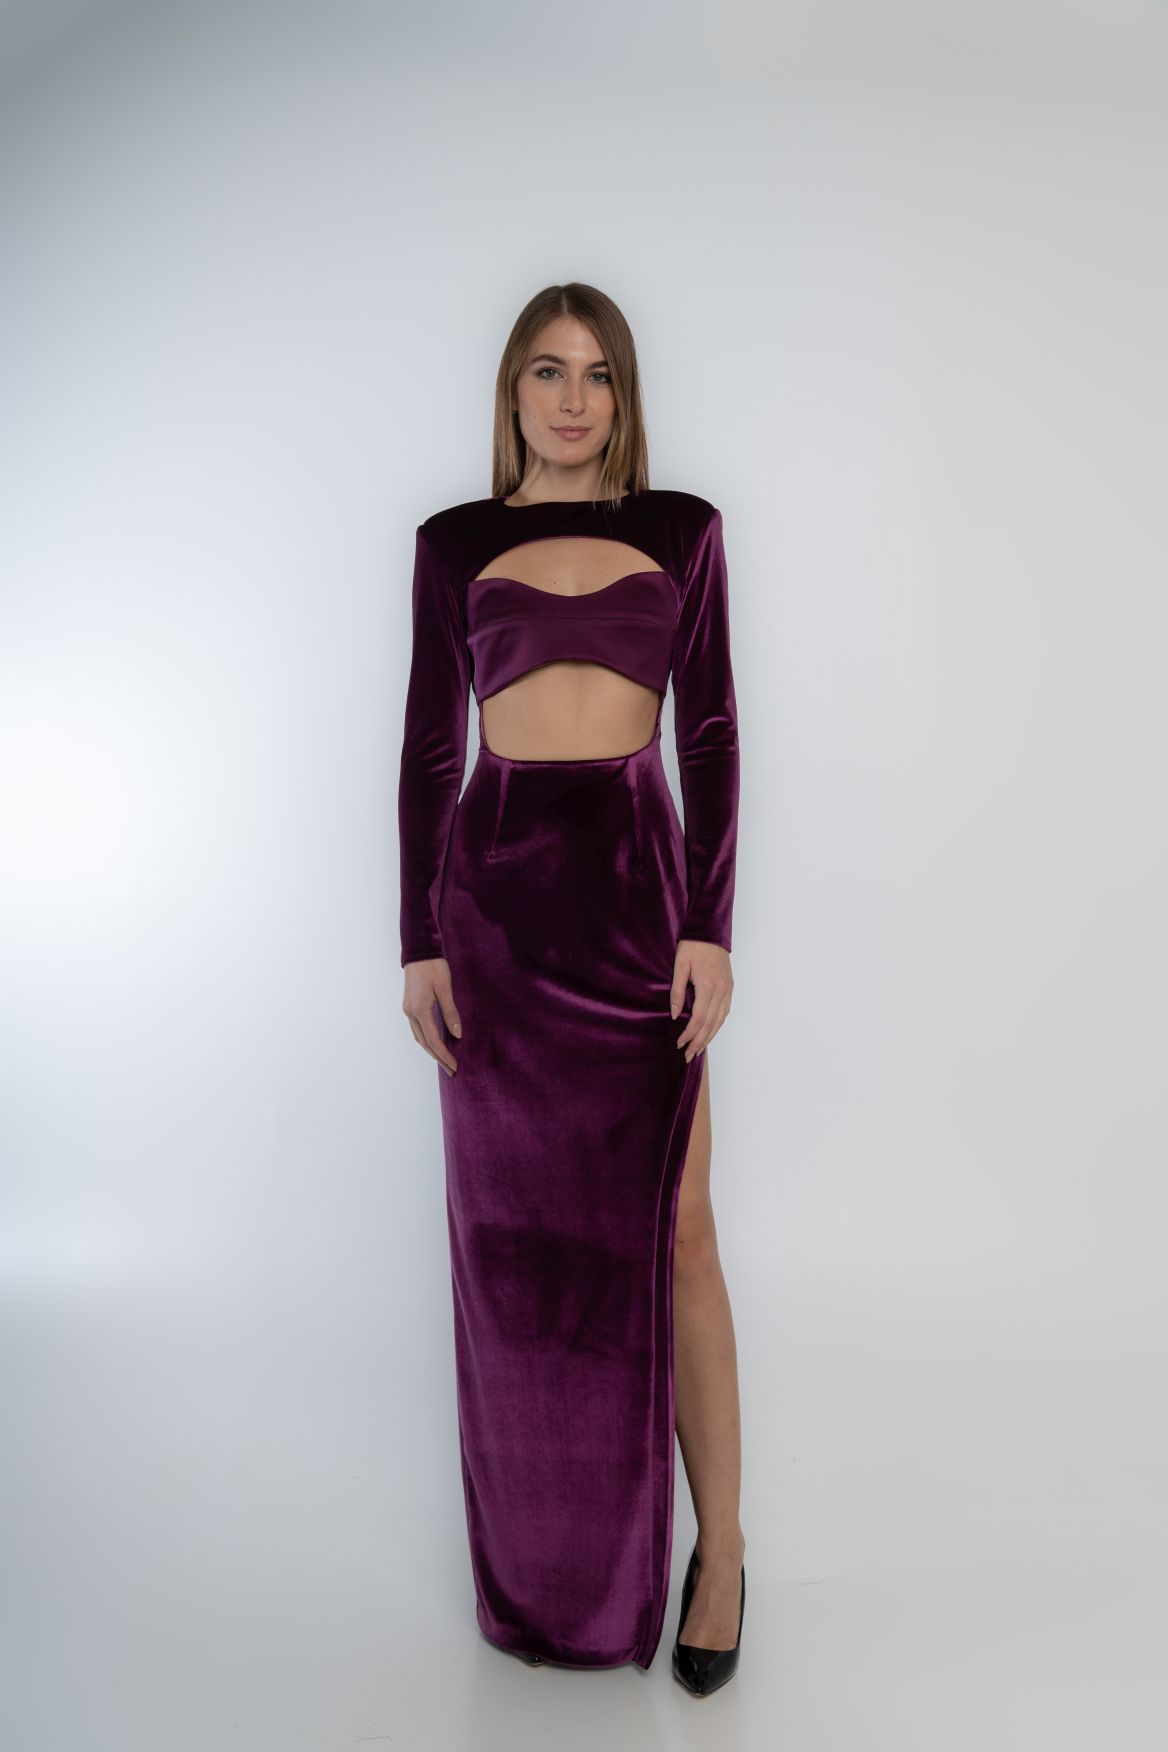 Velvet dress with basque